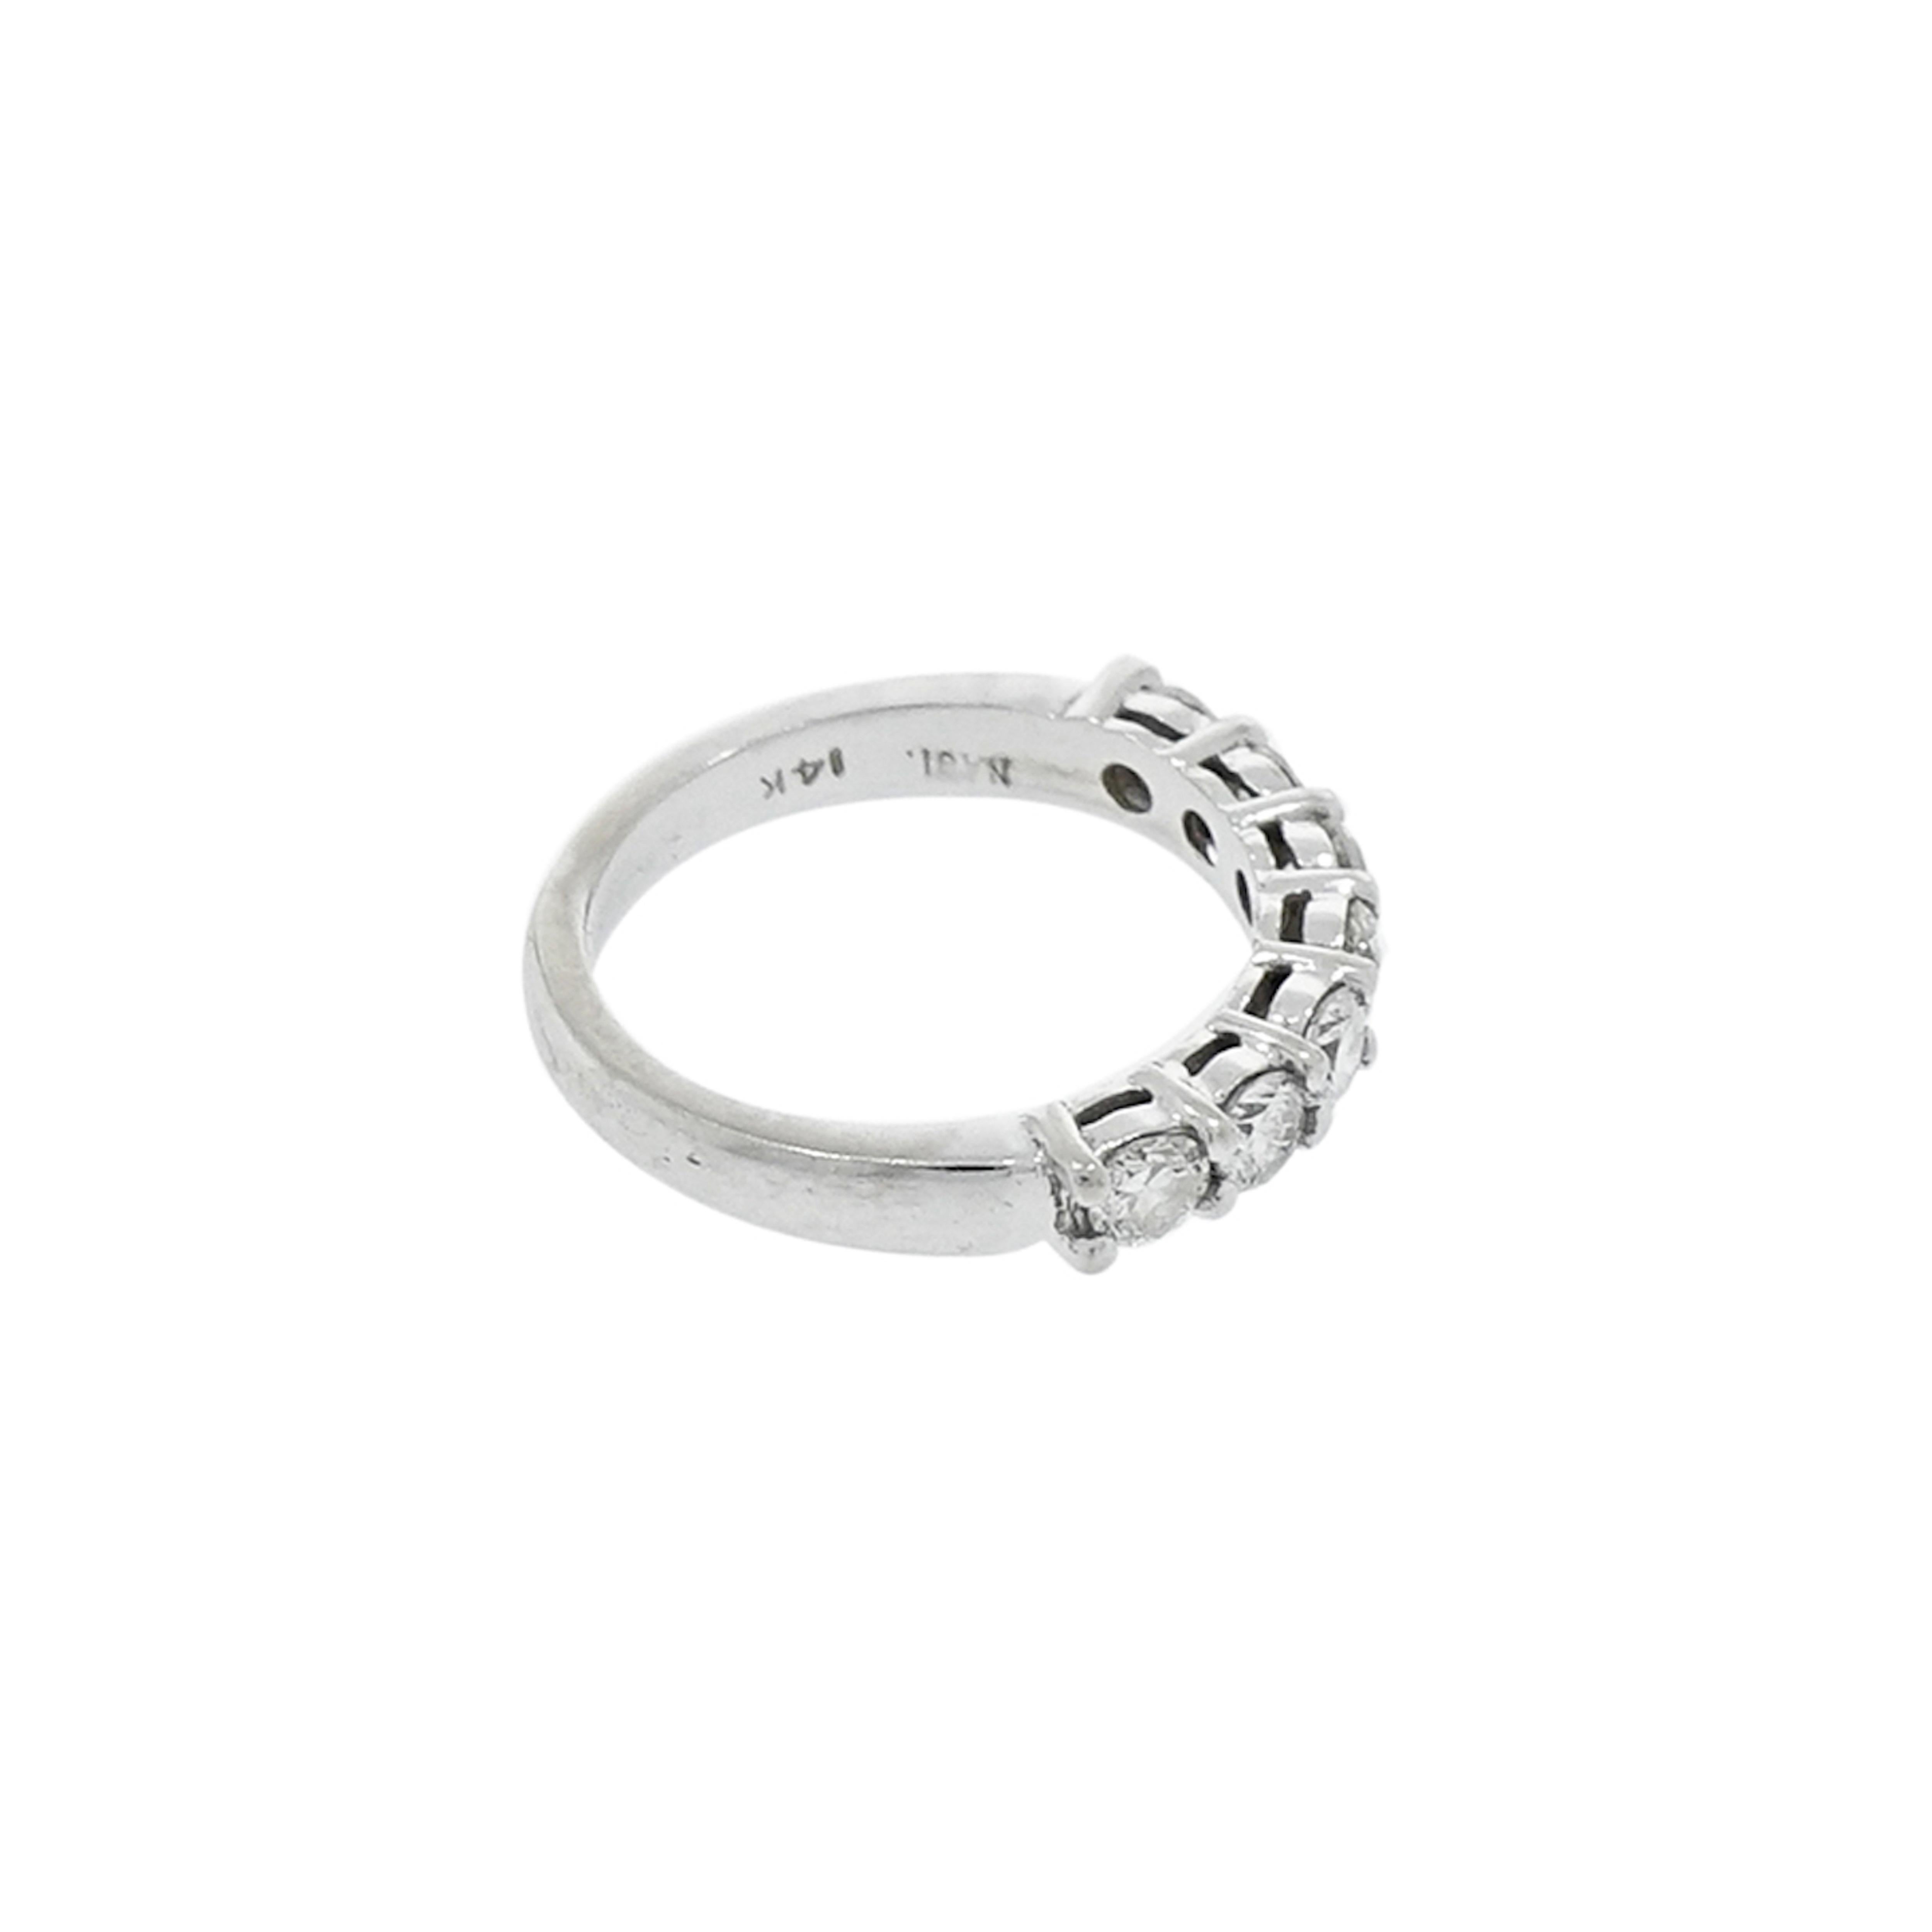 Dieser schillernde Seven Stones Diamant-Jubiläums-/Hochzeitsring mit 0,85 Karat weißen runden Diamanten, H/SI 1. Das Band misst 3,5 mm in der Breite und ist für eine Fingergröße 5 gefertigt, kann aber angepasst werden.
